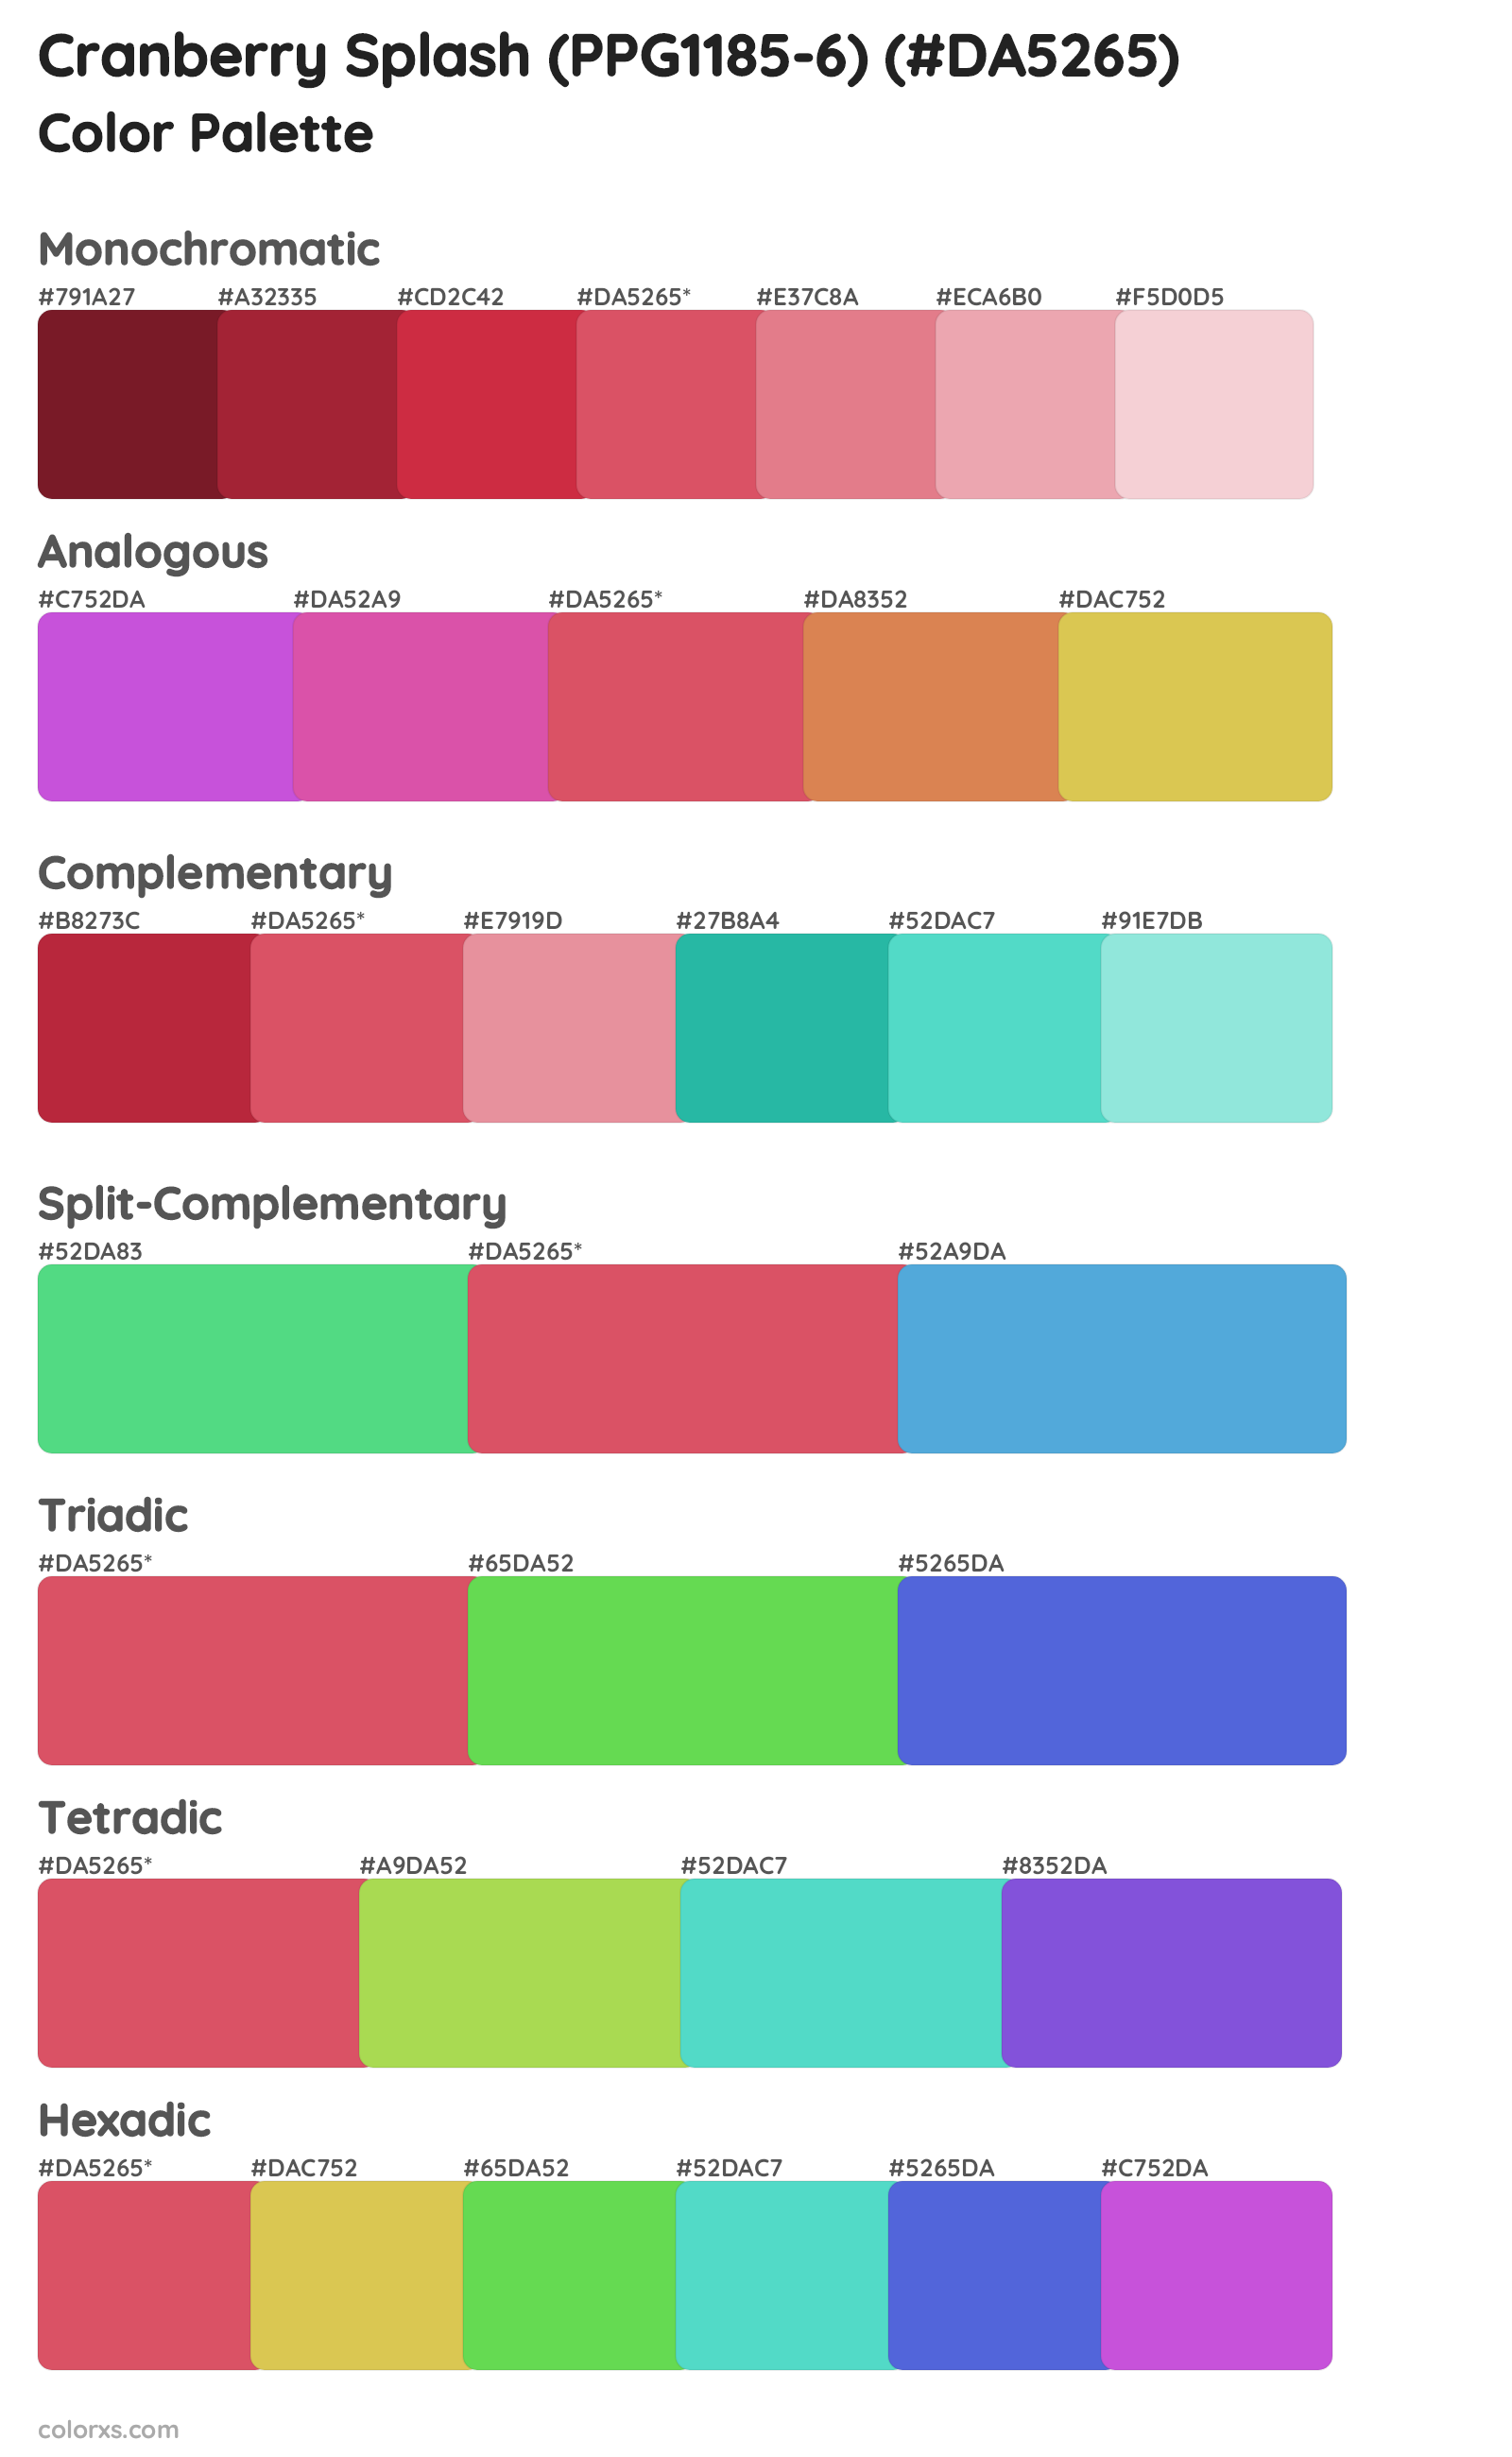 Cranberry Splash (PPG1185-6) Color Scheme Palettes